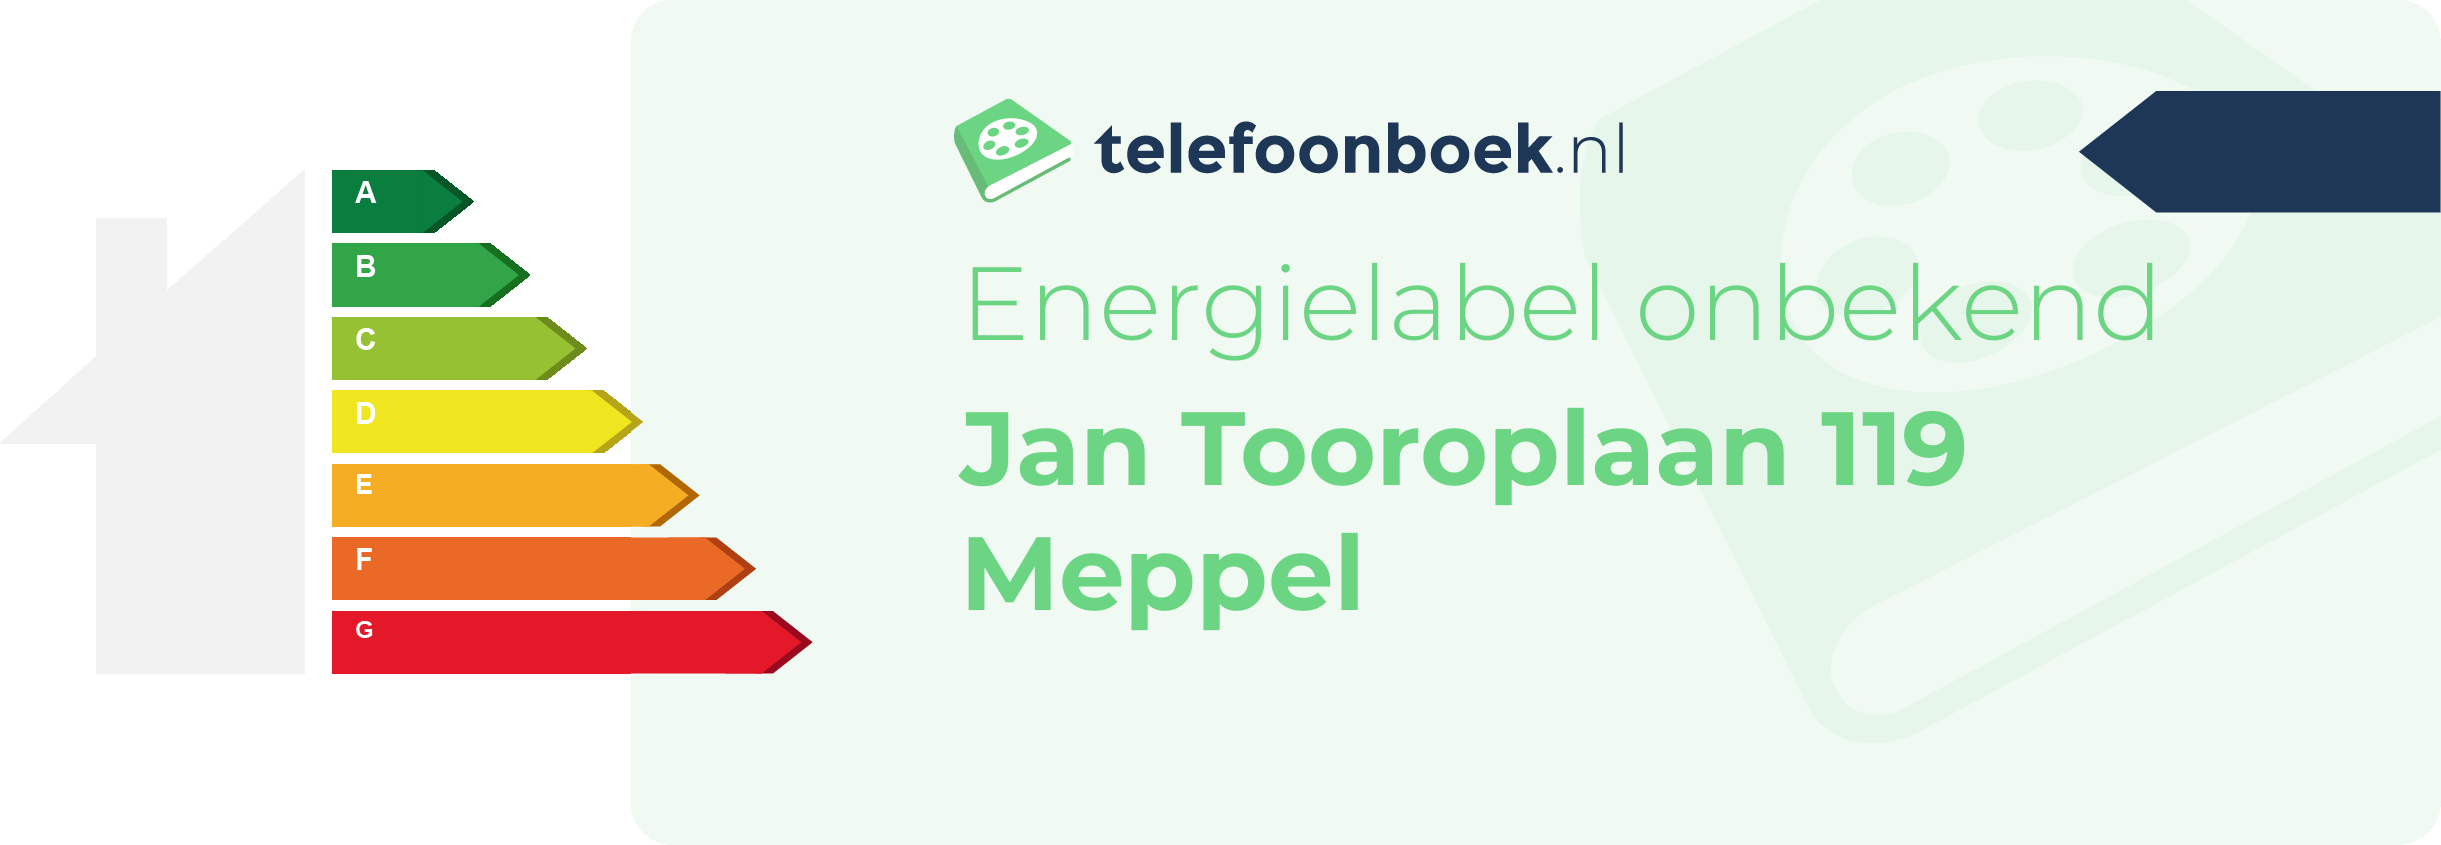 Energielabel Jan Tooroplaan 119 Meppel